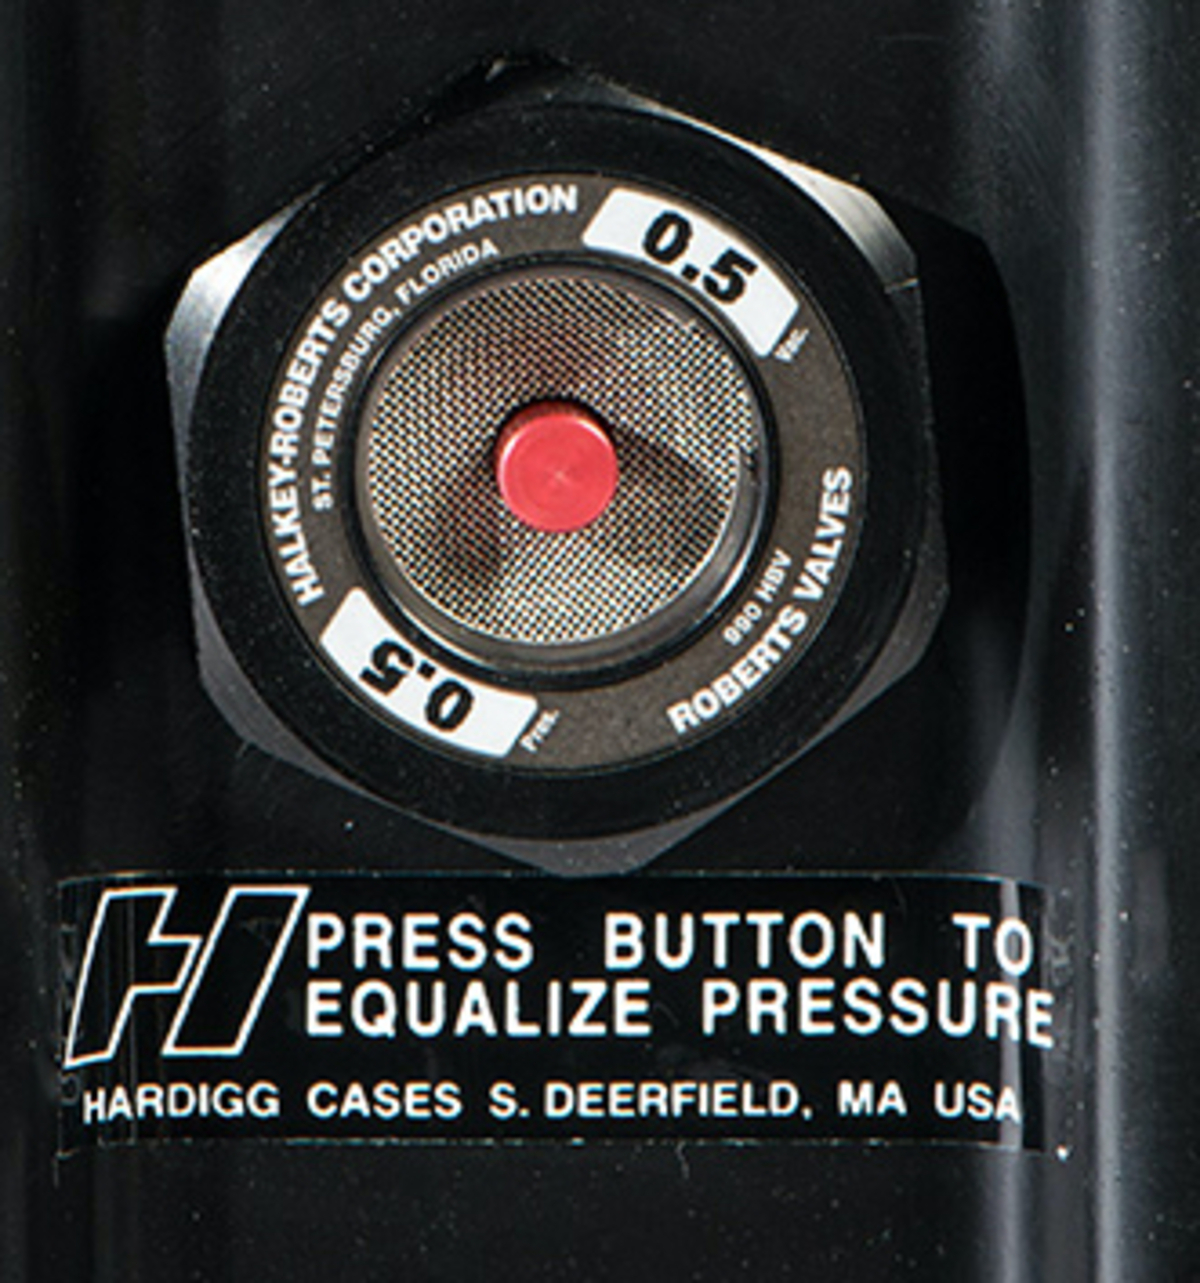 Automatic pressure relief valve